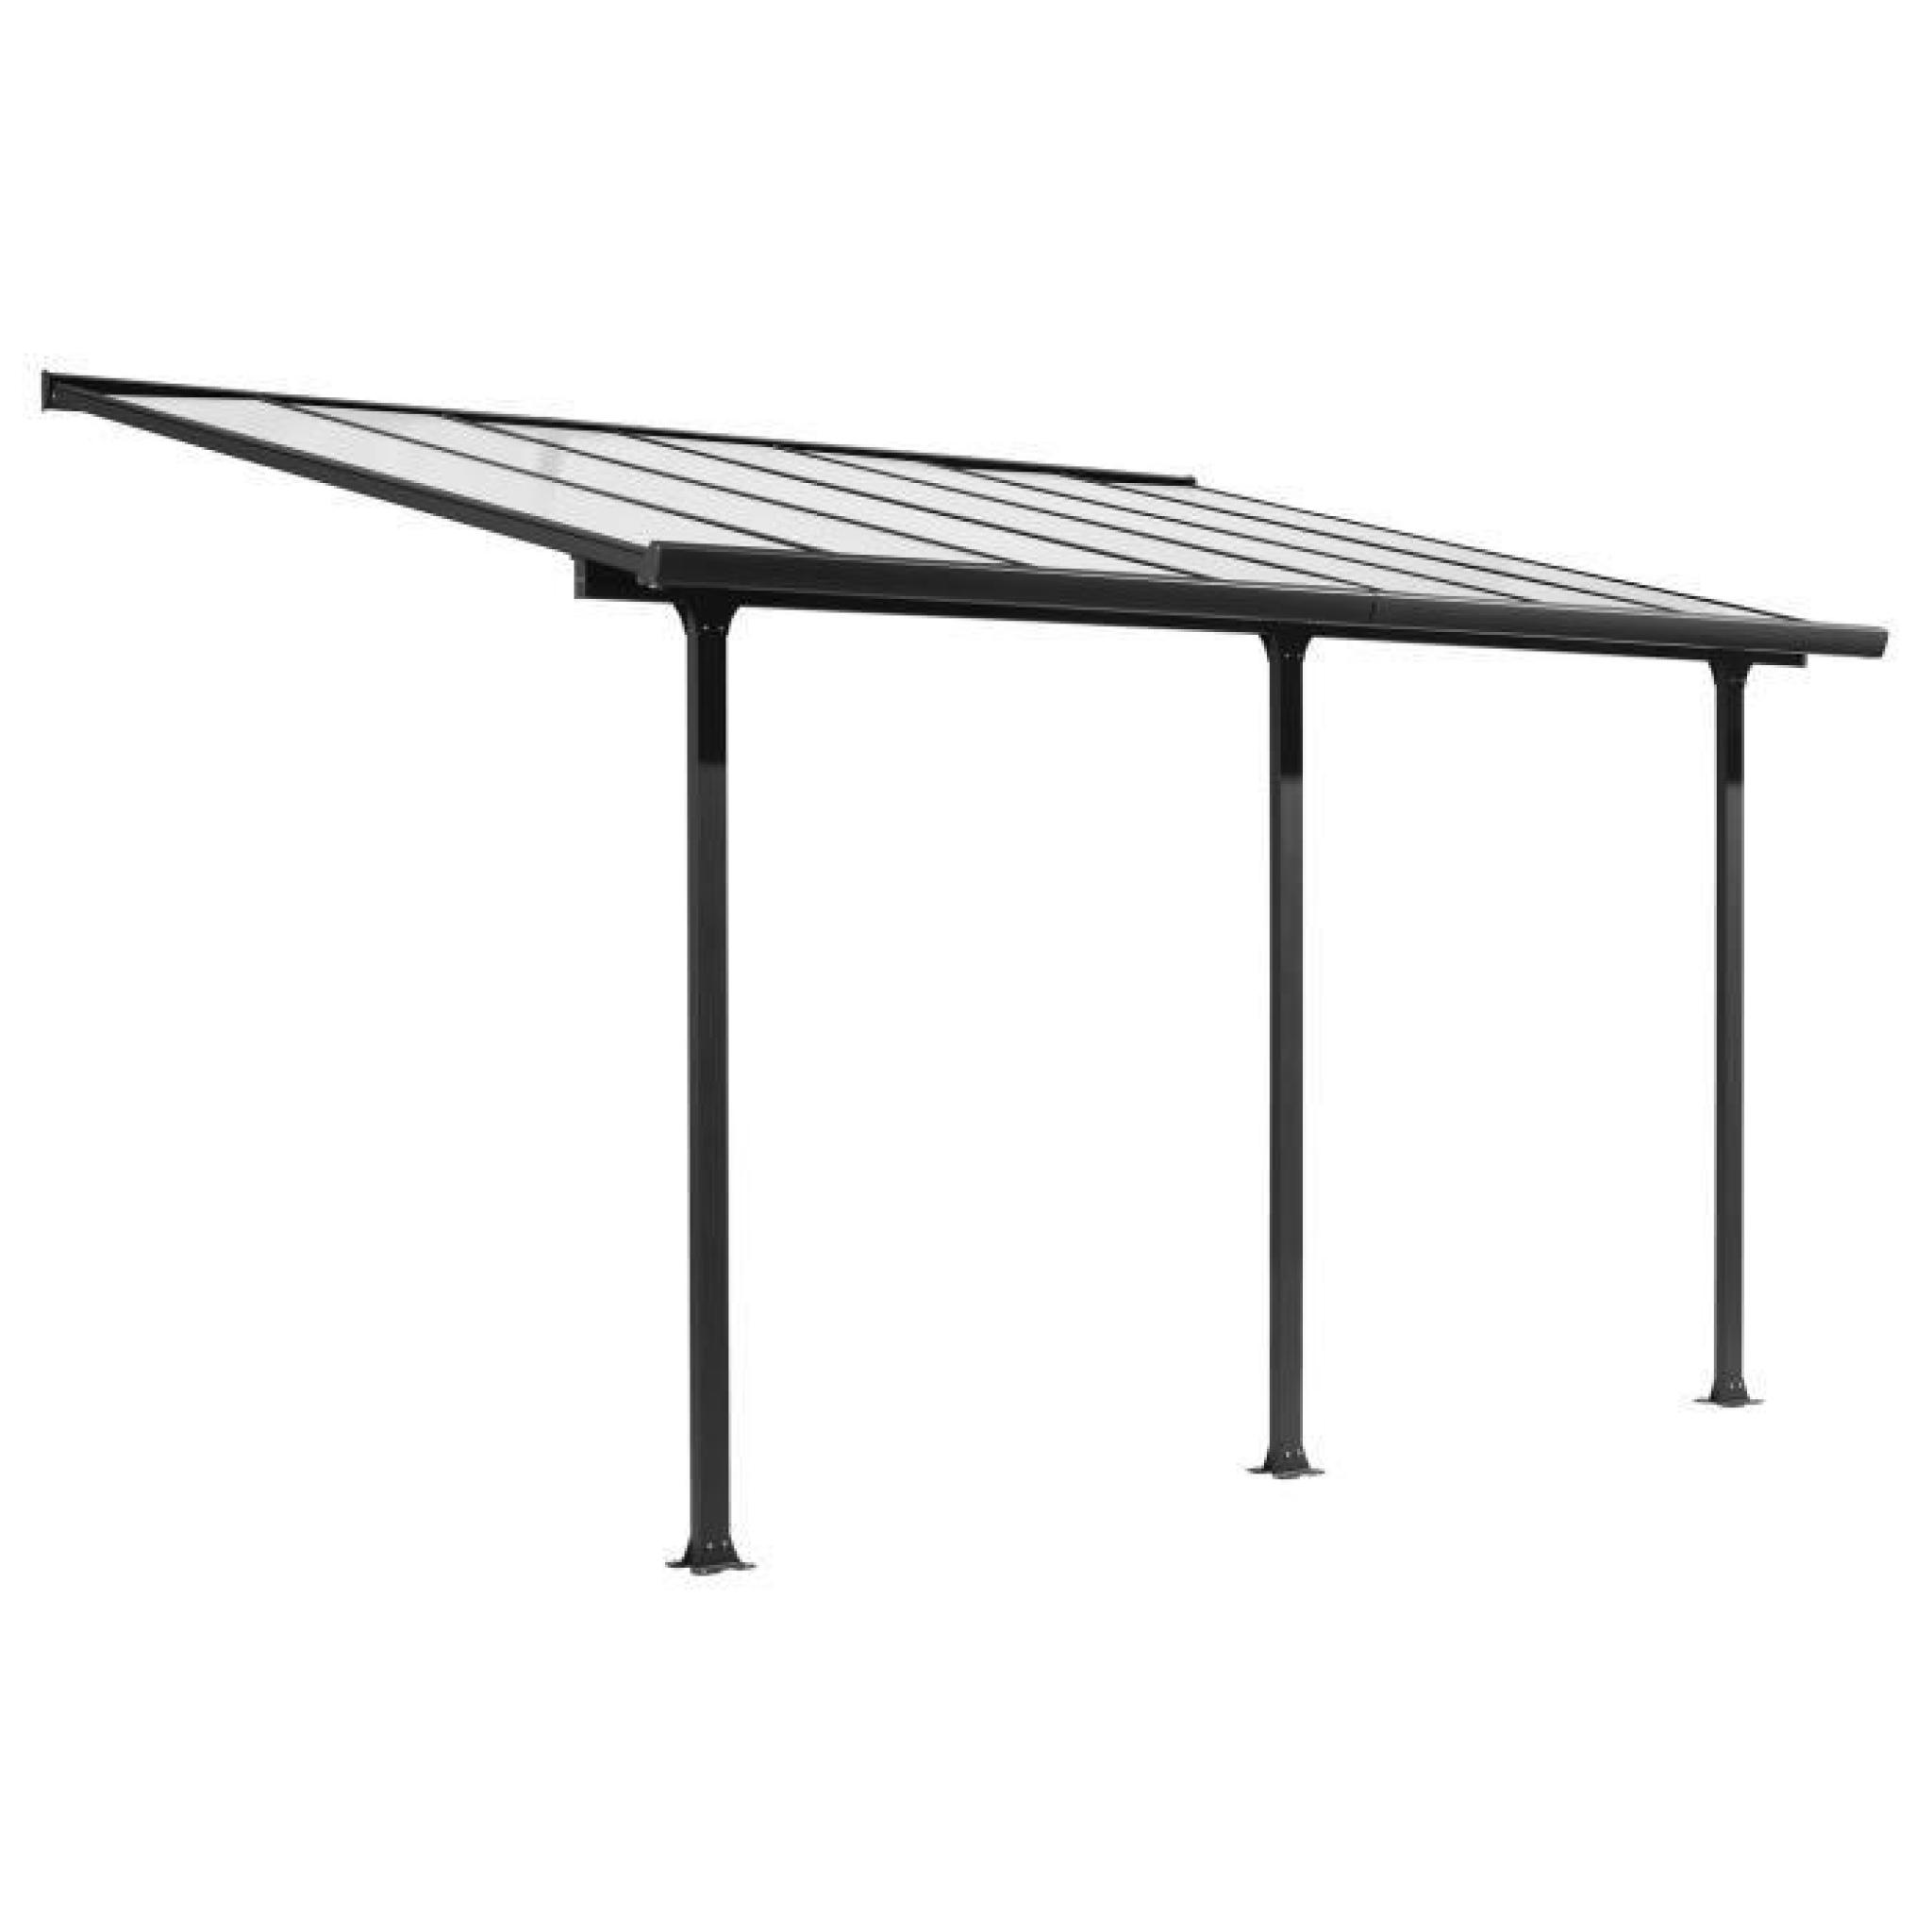 Toit-terrasse aluminium 12,83 m² - 418 x 307 cm - Gris anthracite